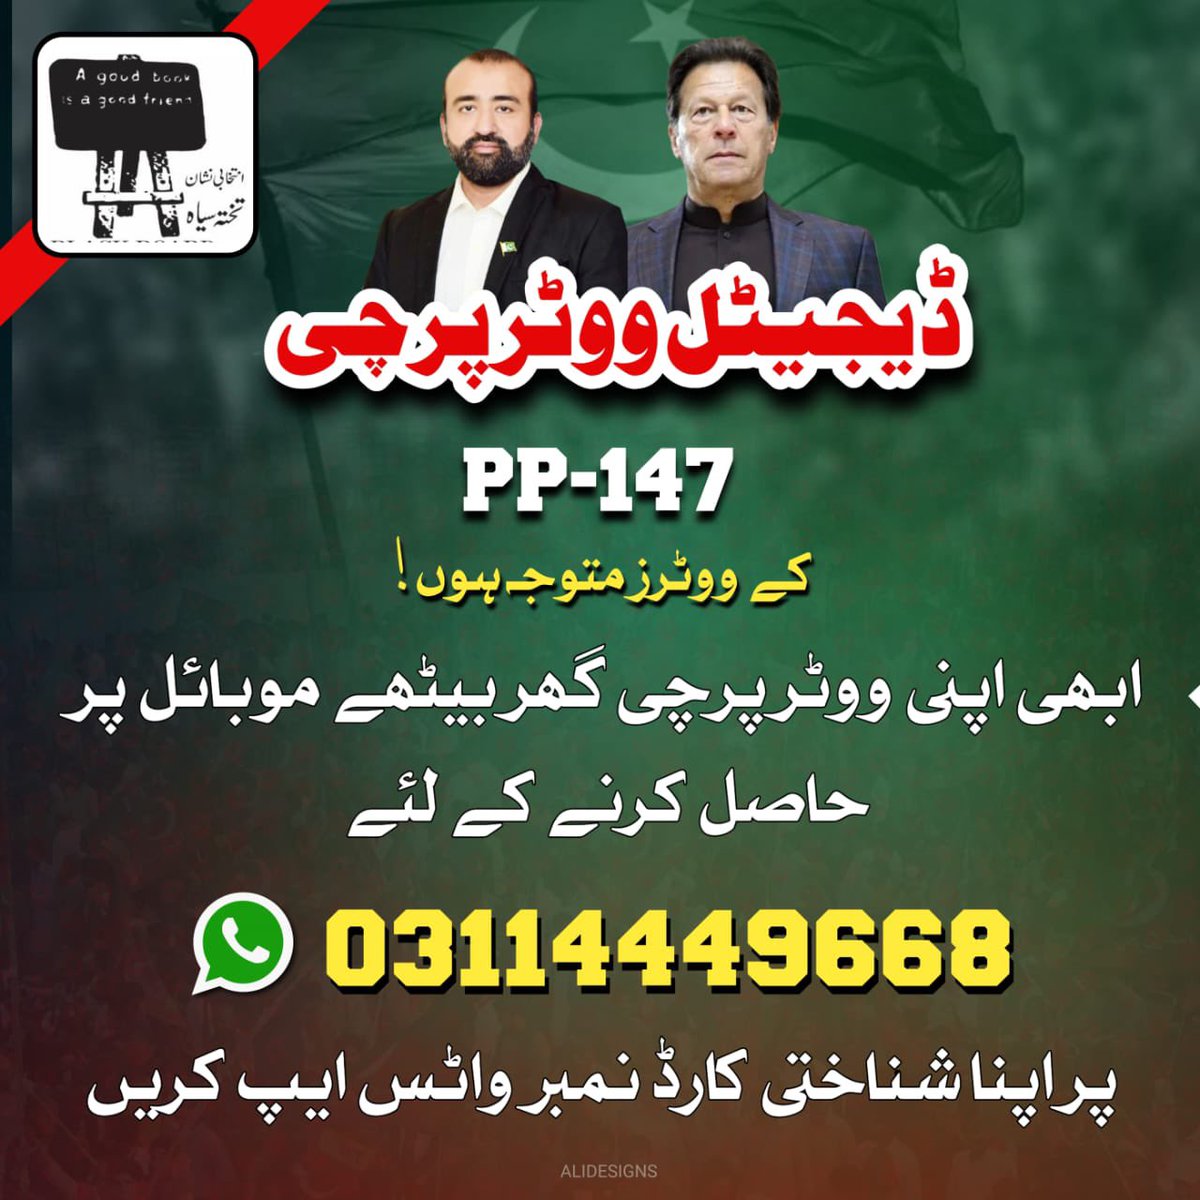 اندرون لاہور کے حلقے PP-147 میں اتوار کو ضمنی انتخابات ہیں اس حلقے کے ووٹرز مندرجہ ذیل نمبر پر رابطہ کر کے ووٹر ہرچی حاصل کر سکتے ہیں امیدوار: محمد خان مدنی نشان: تختہ سیاہ (blackboard)